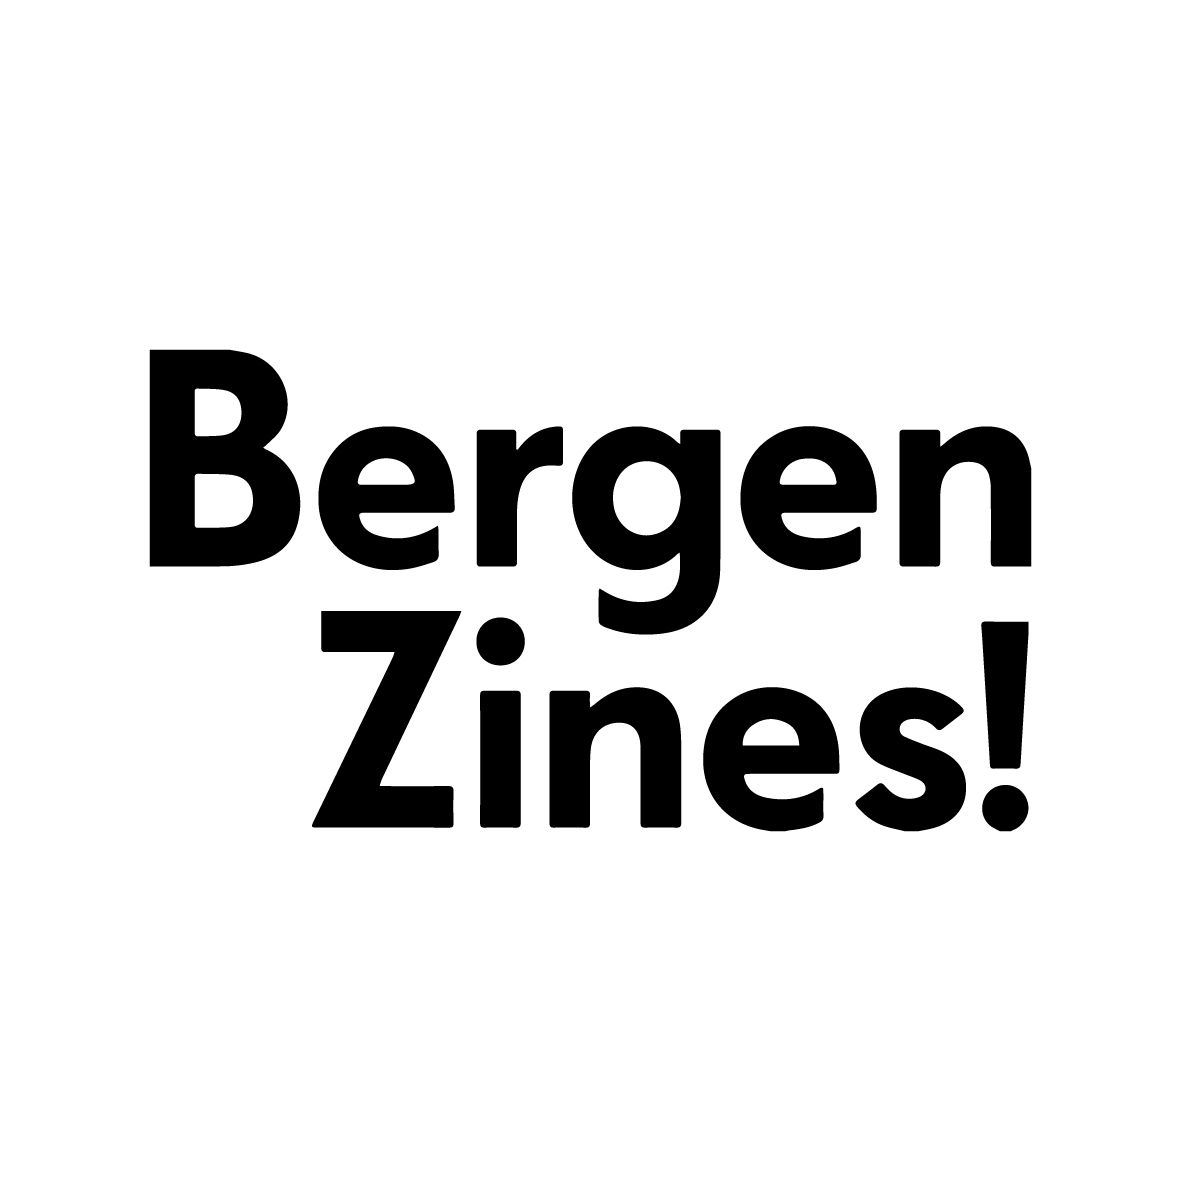 BergenZines!